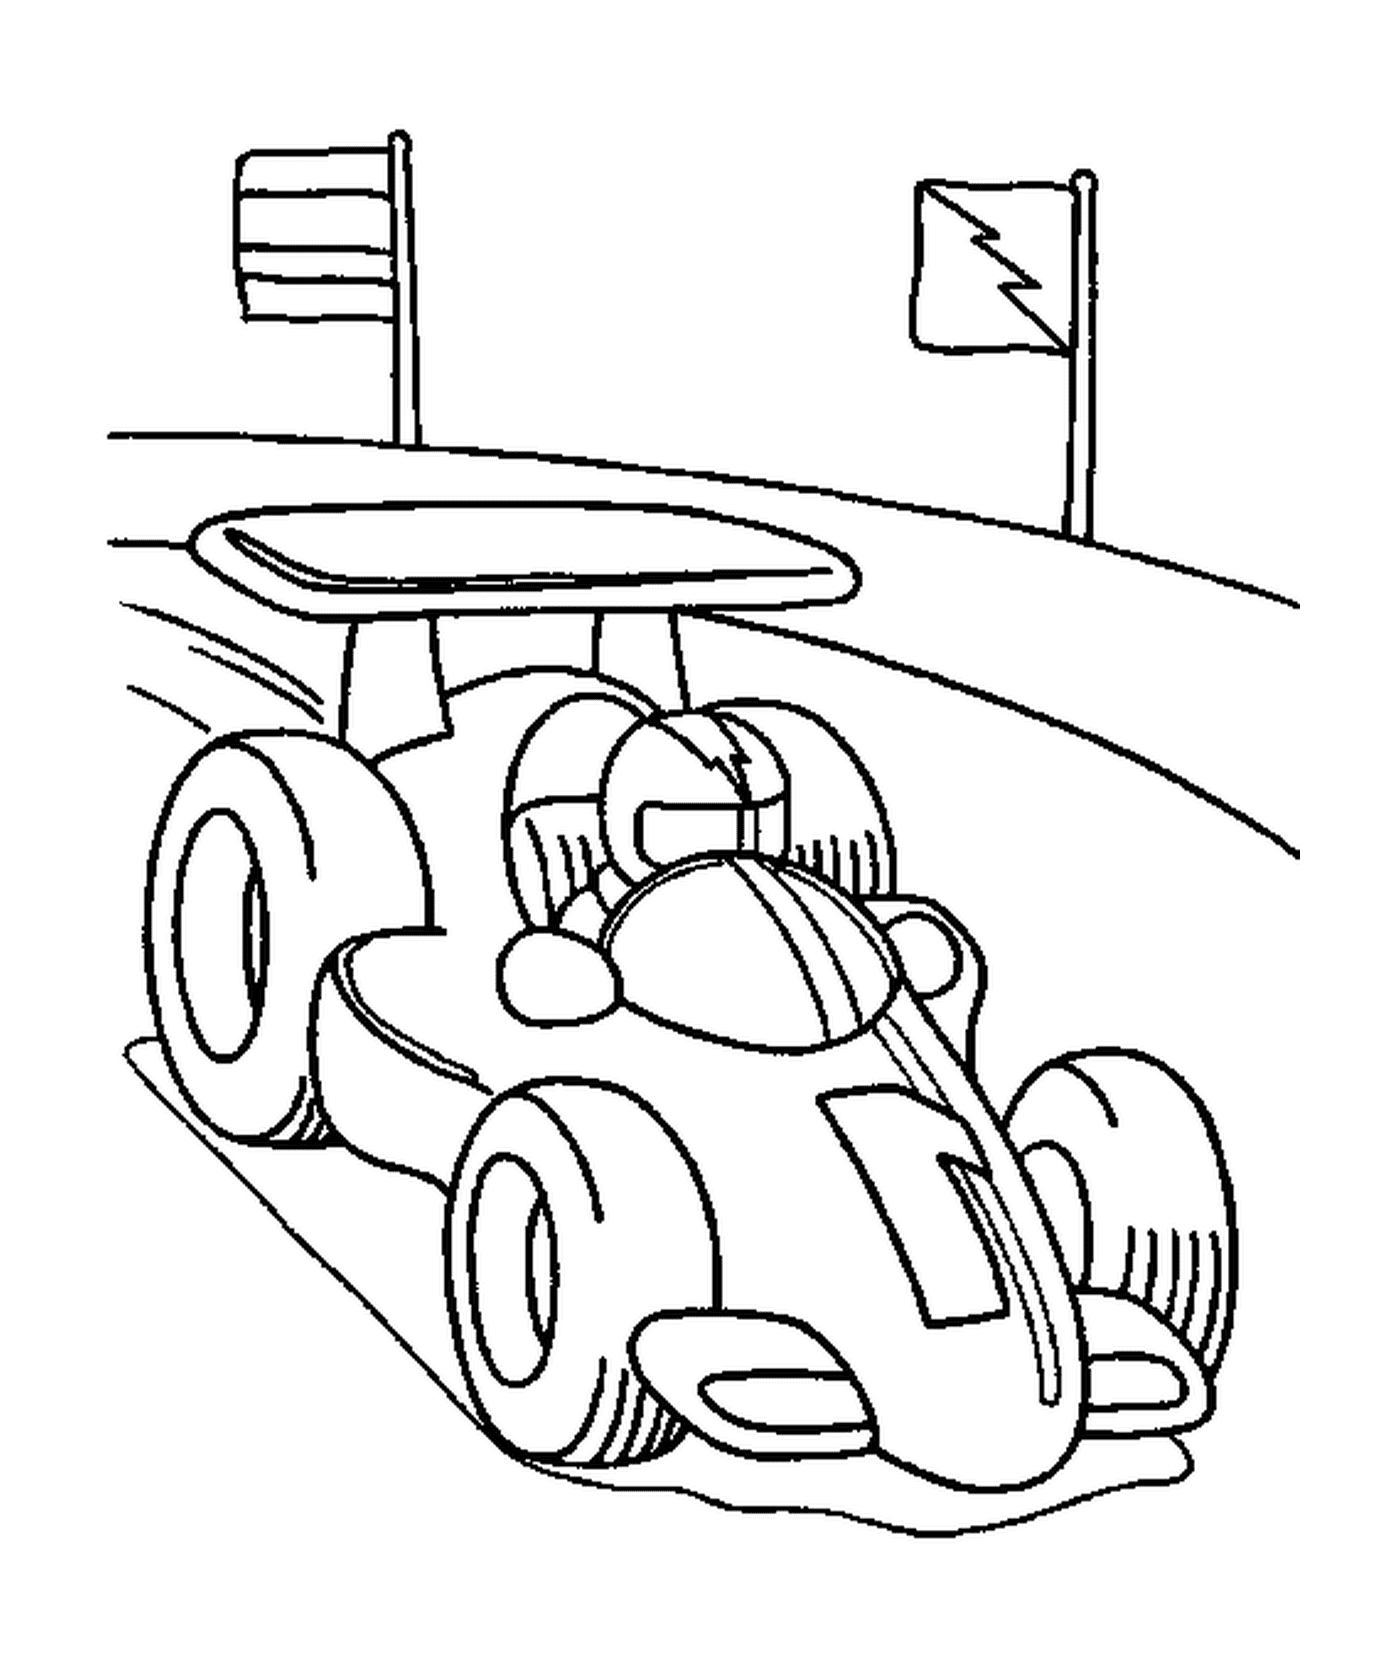  Fórmula 1 carro 